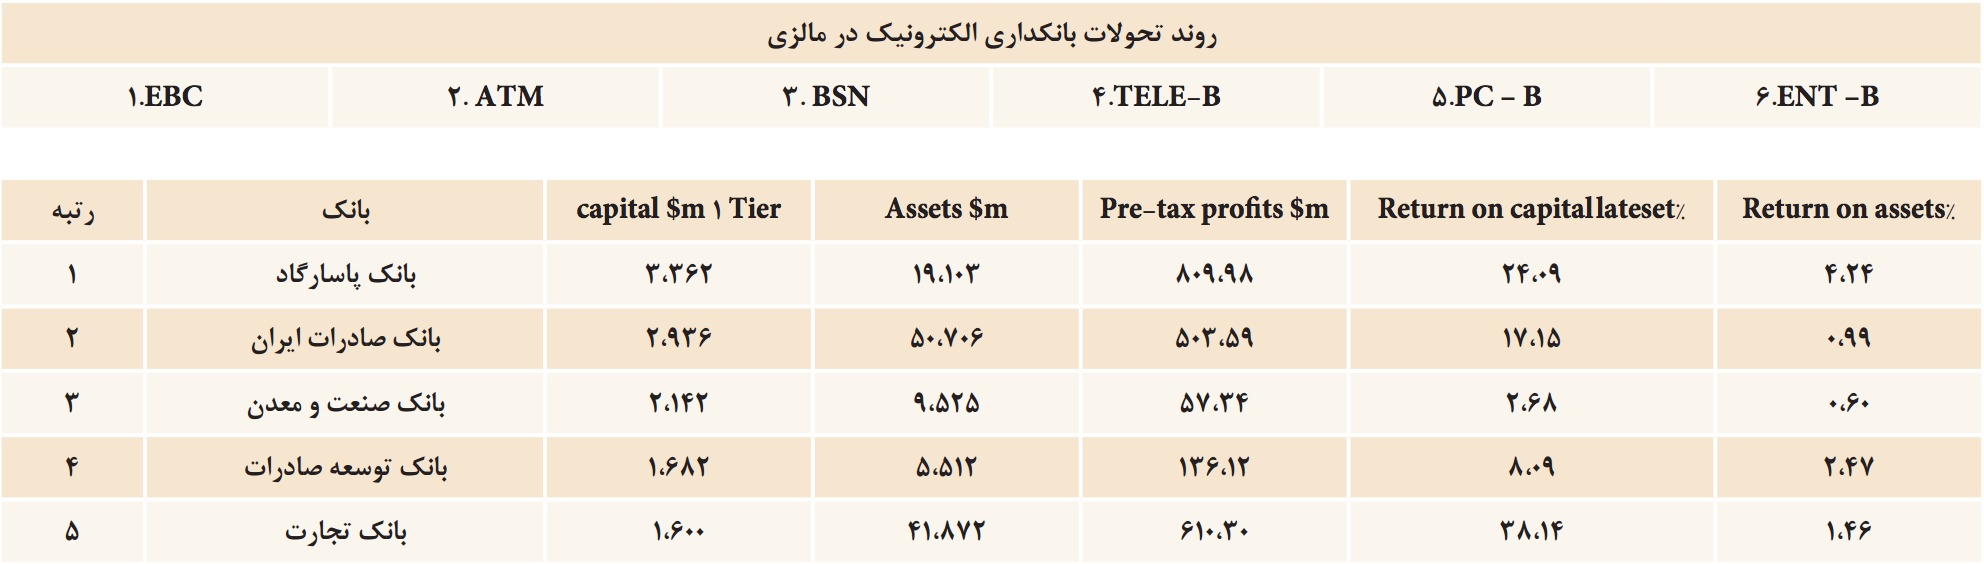 ایران رتبه ششم خاورمیانه در بانکداری الکترونیک